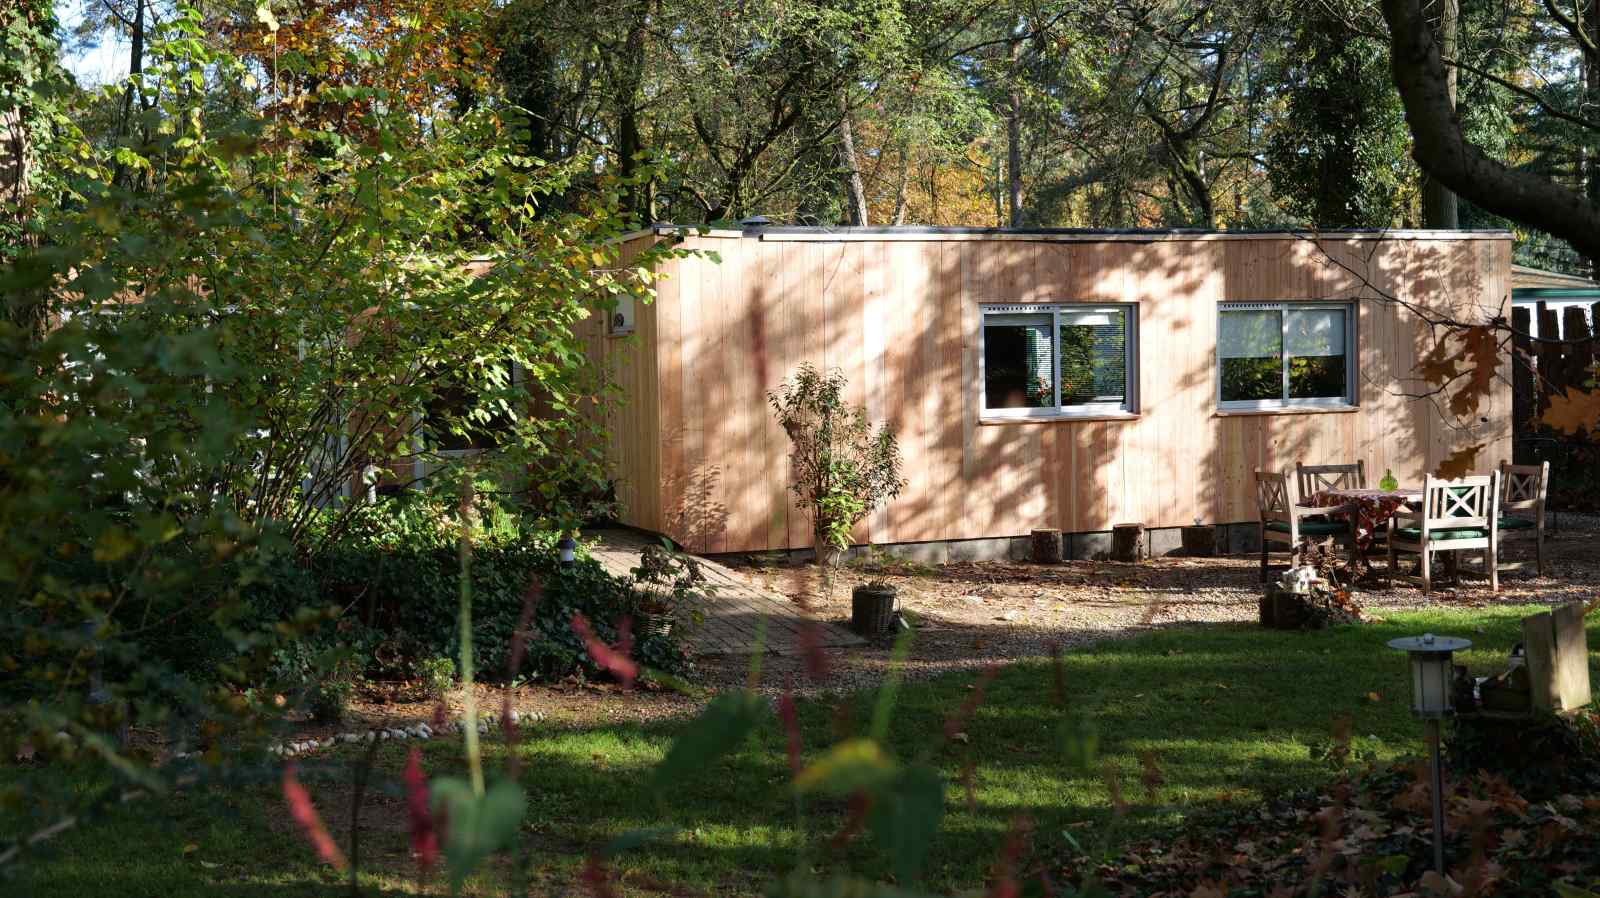 Mooi 4 persoons vakantiehuis met infrarood sauna in de Achterhoekse bossen - Nederland - Europa - Lochem